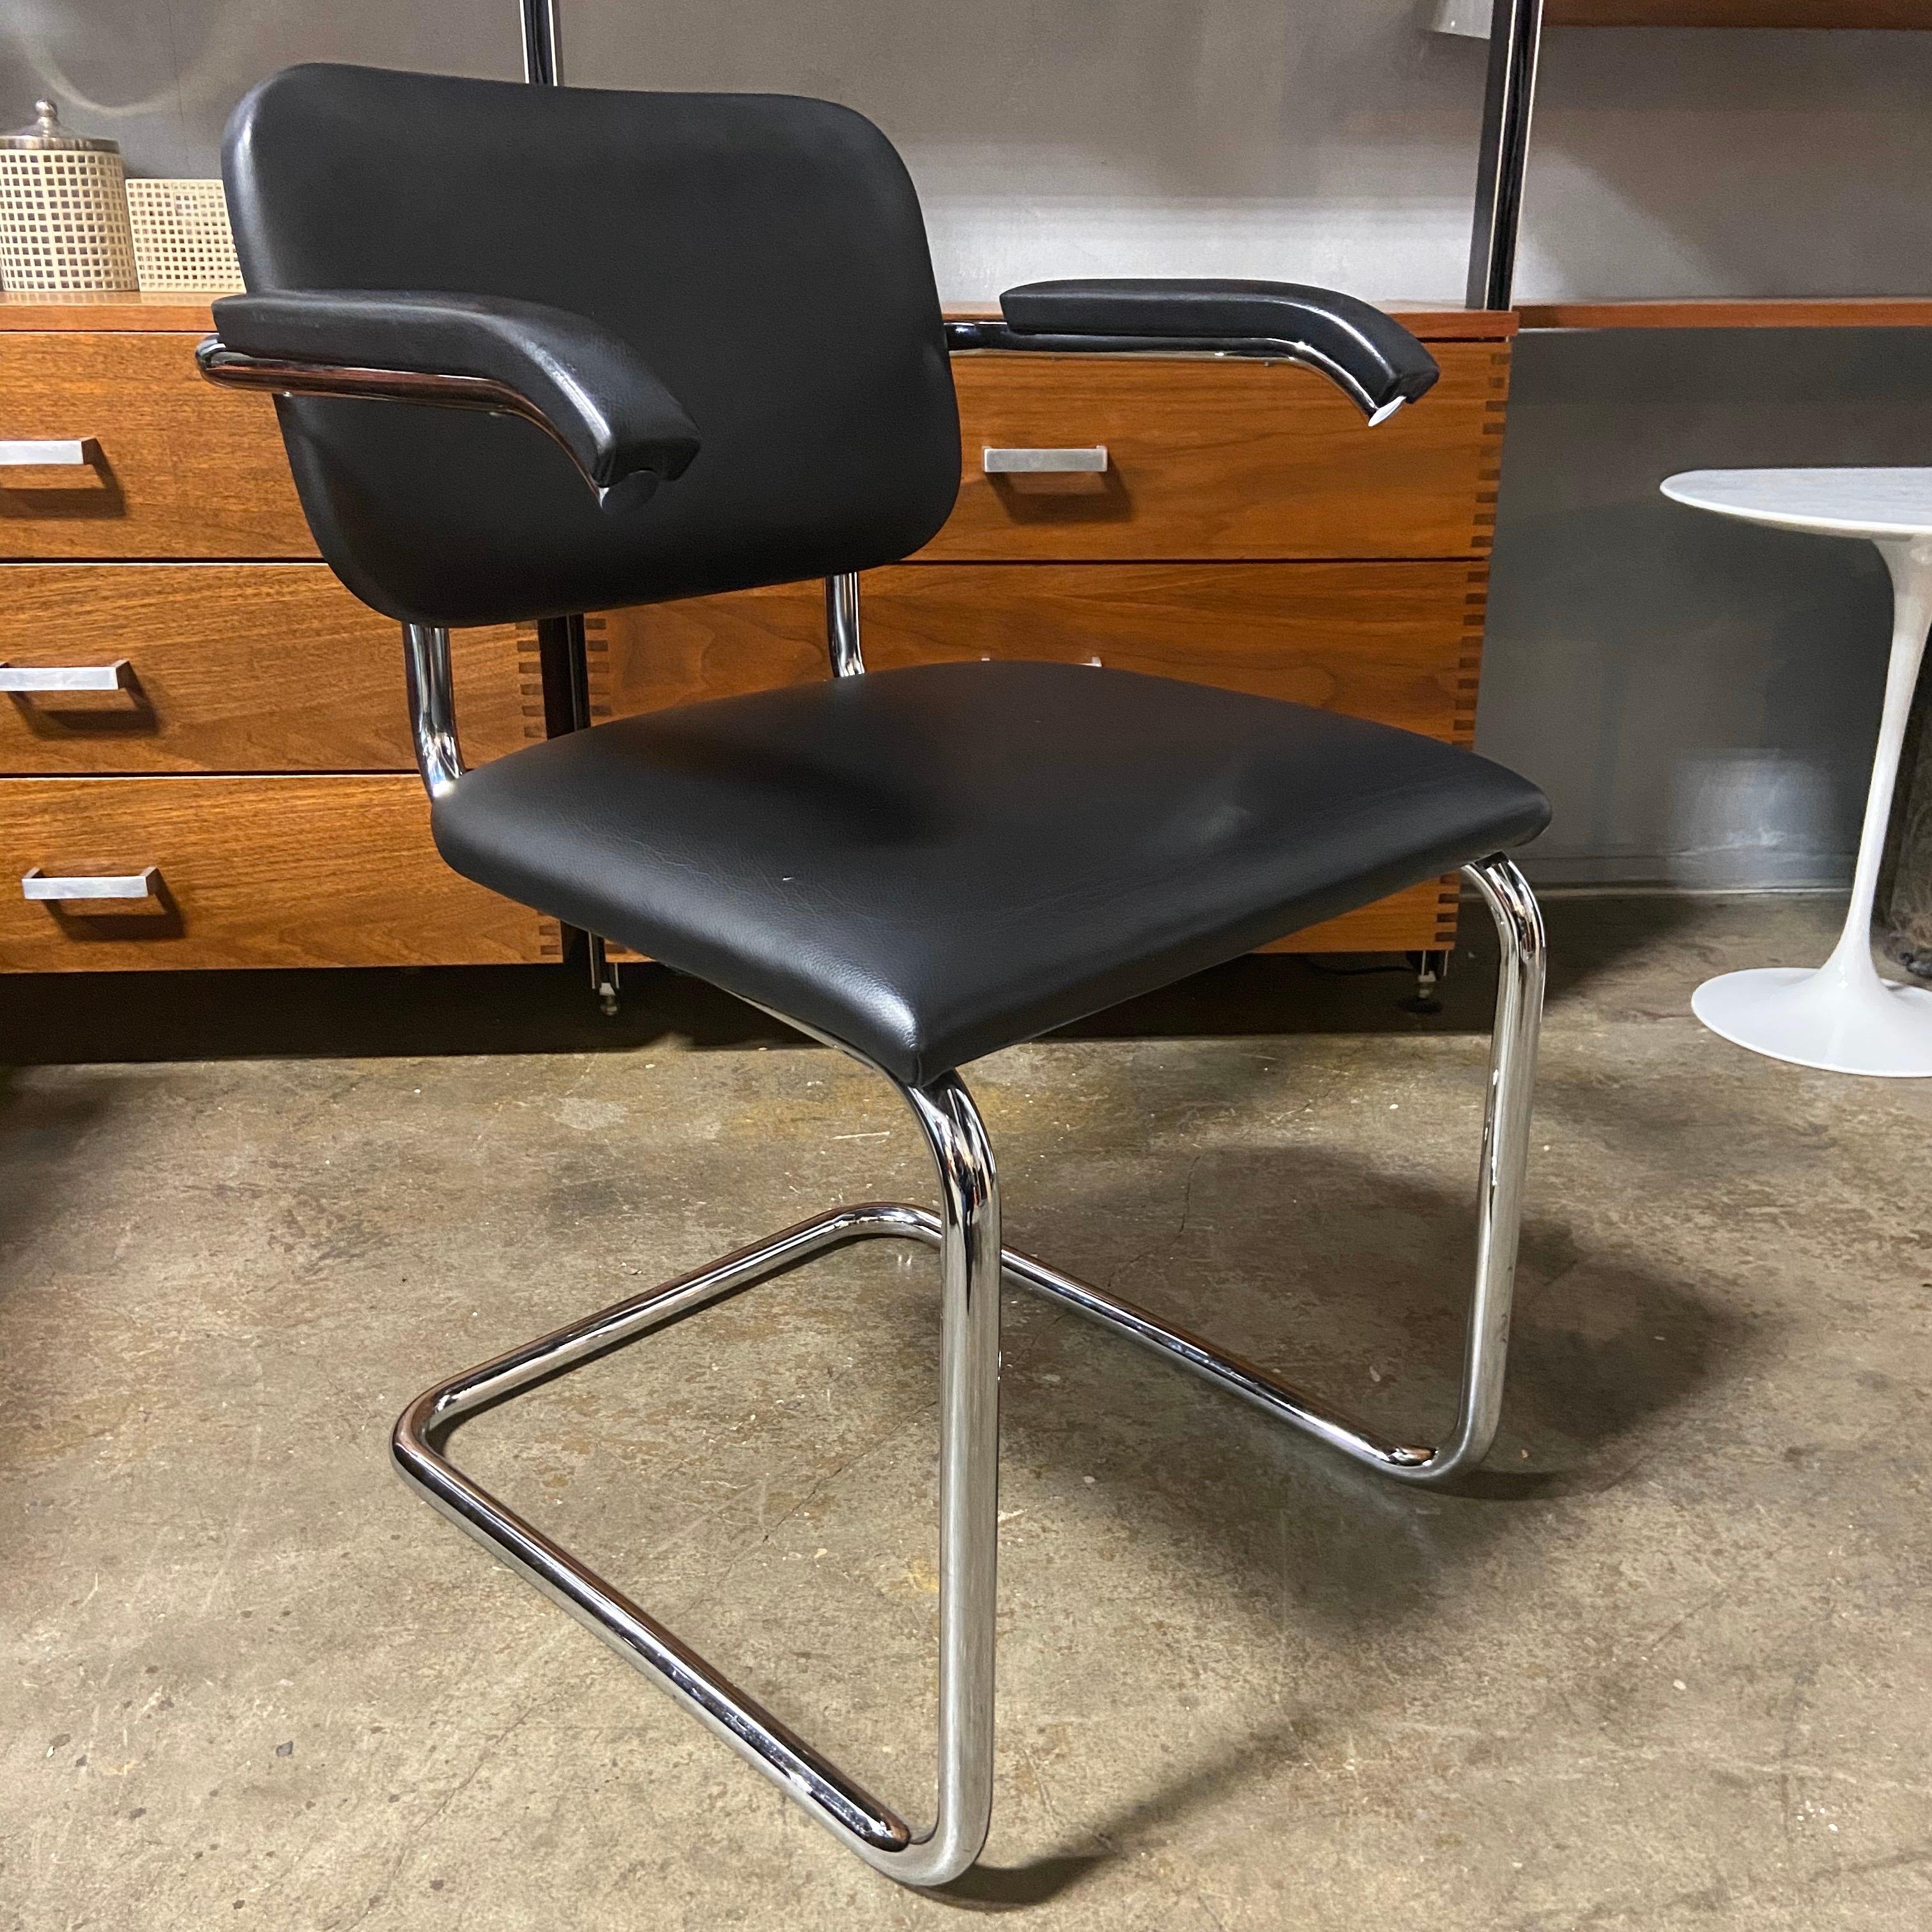 Nous vous proposons ces magnifiques chaises Cesca en cuir noir brillant et en chrome épais. Parfait pour la maison ou le bureau et prêt à l'emploi, avec peu ou pas d'usure. Tous portent le logo Knoll et la signature de Marcel Breuer. Il s'agit sans